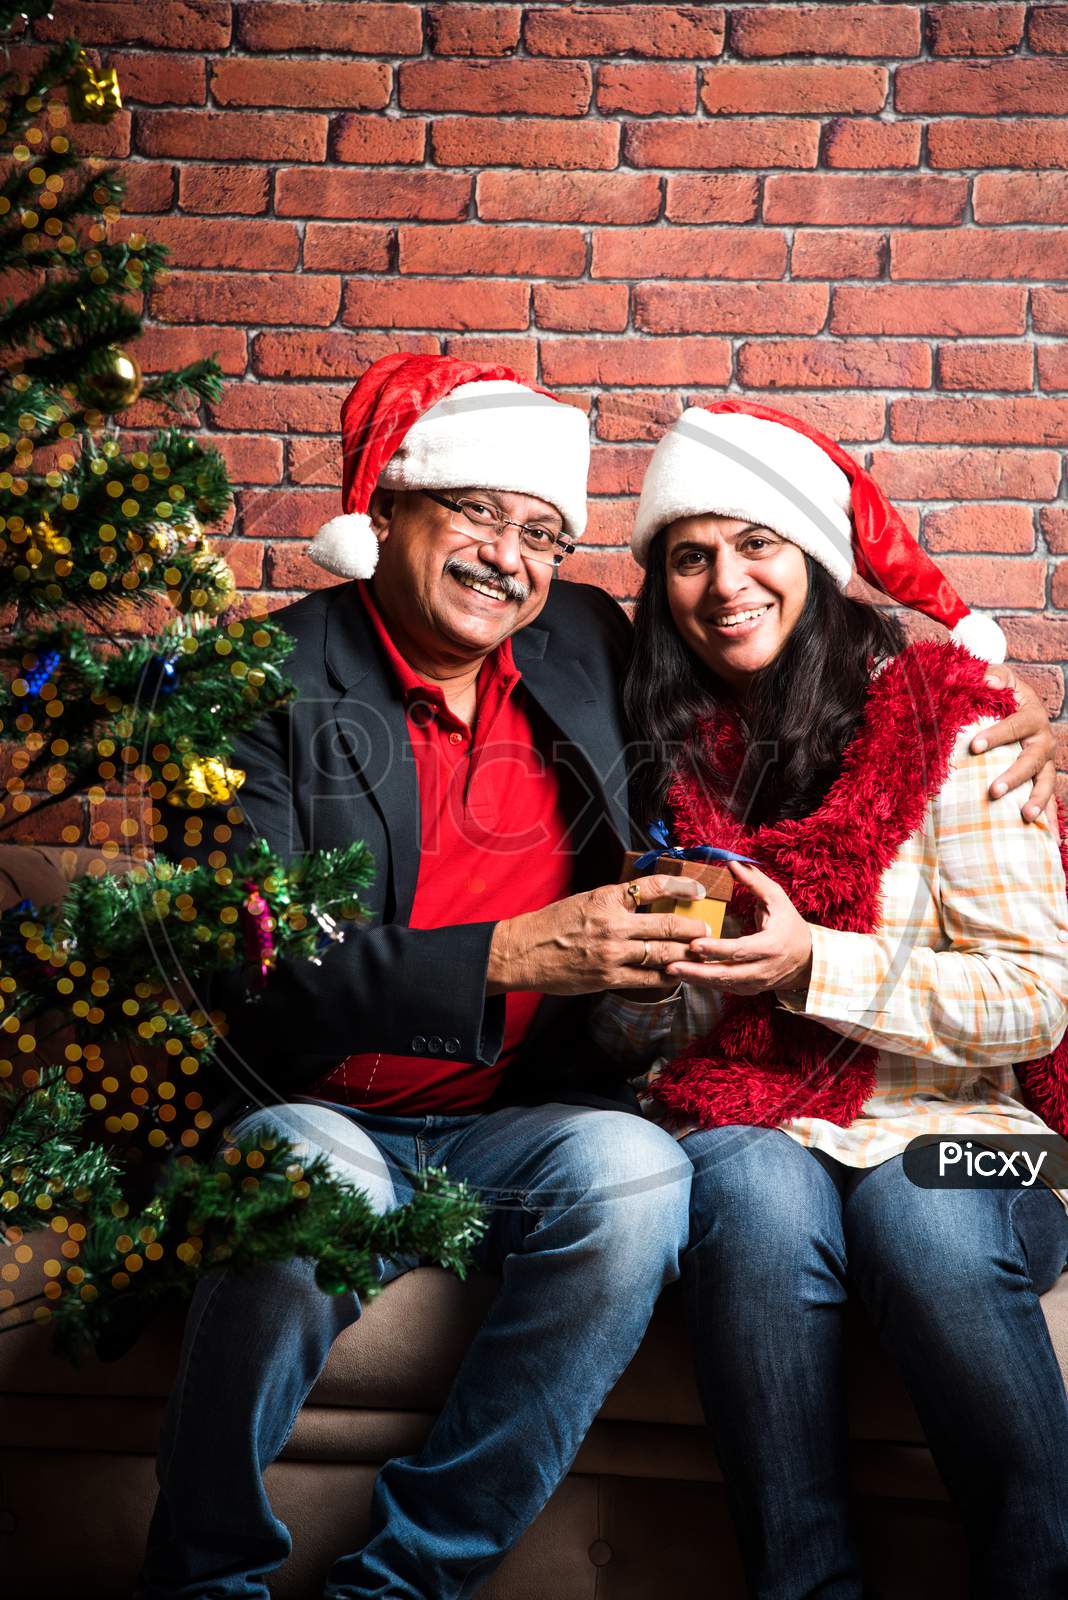 Indian Old couple celebrating Christmas / Xmas